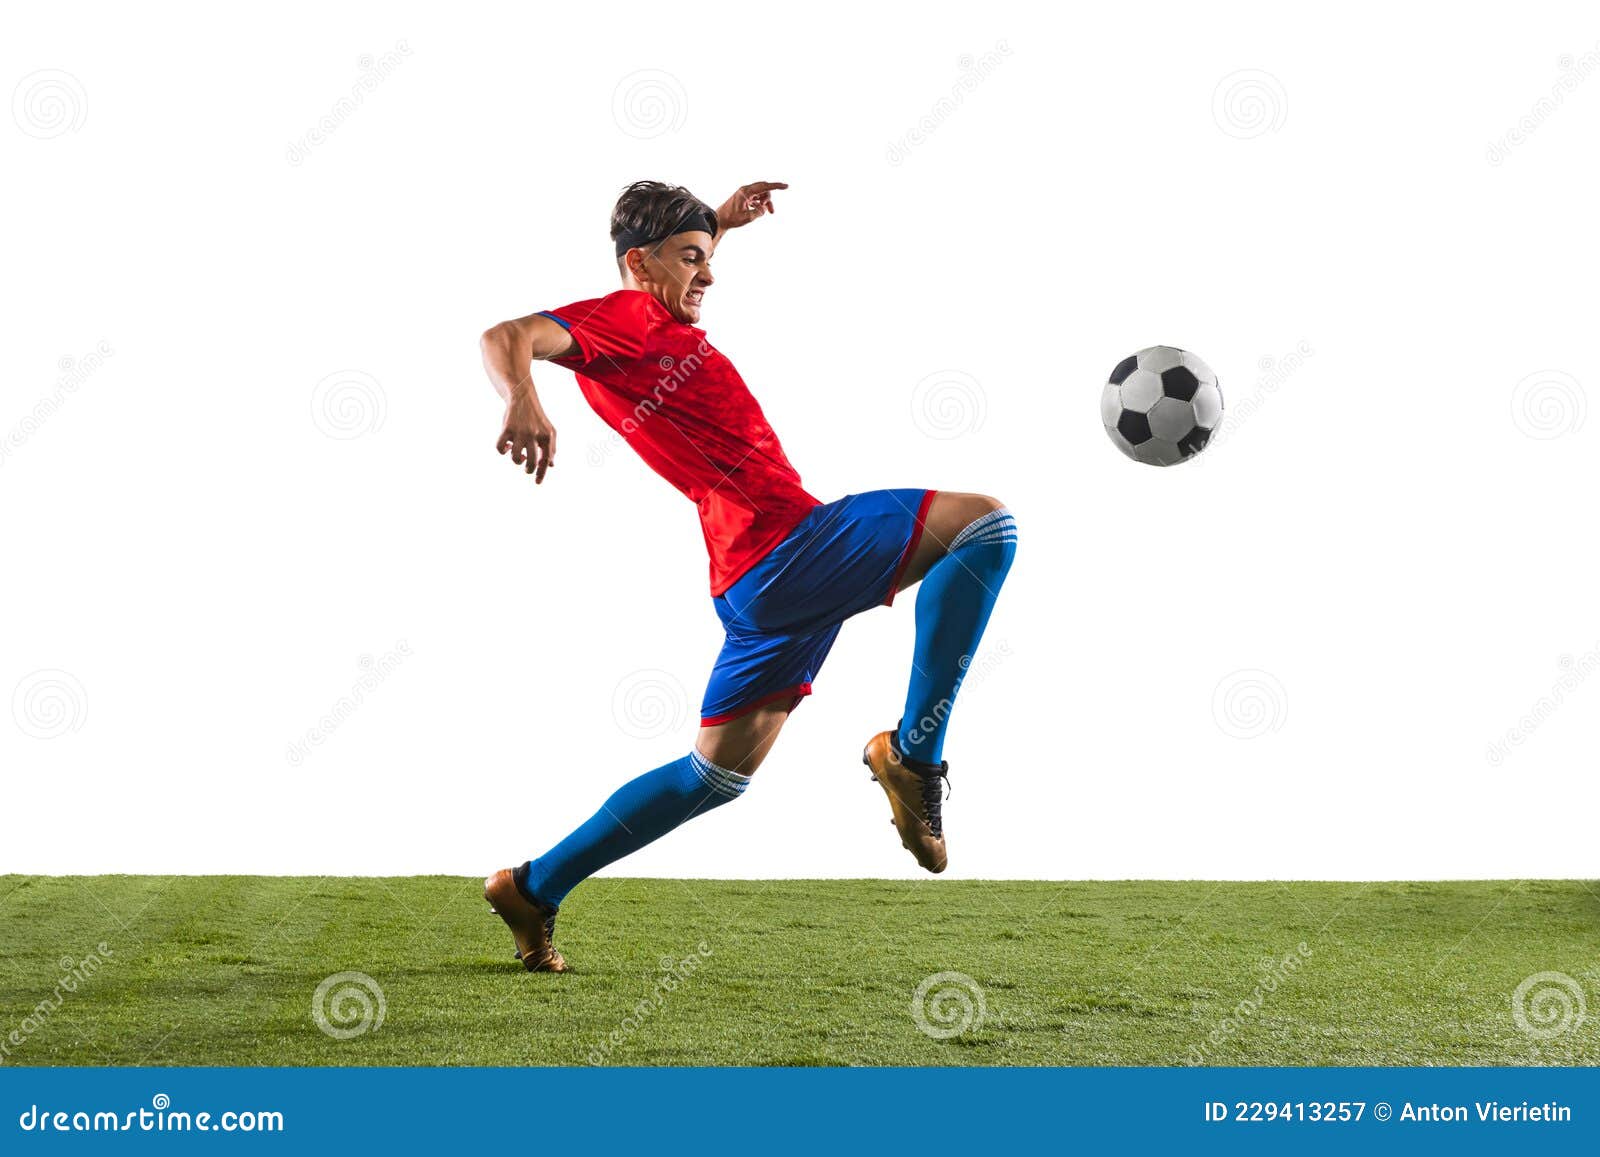 Atleta chutando bola de futebol silhueta de jogador de futebol